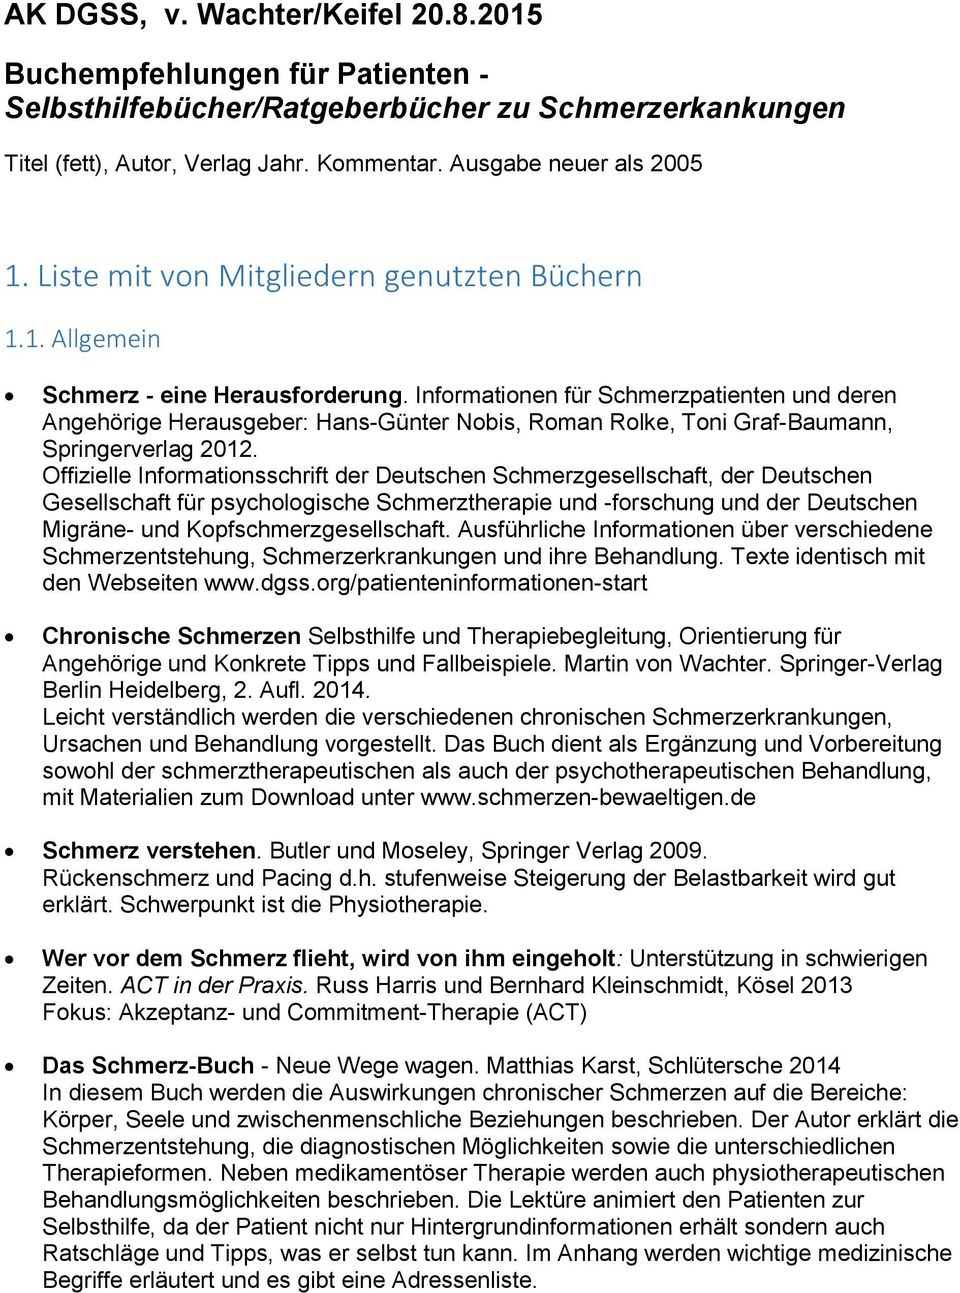 Informationen für Schmerzpatienten und deren Angehörige Herausgeber: Hans-Günter Nobis, Roman Rolke, Toni Graf-Baumann, Springerverlag 2012.